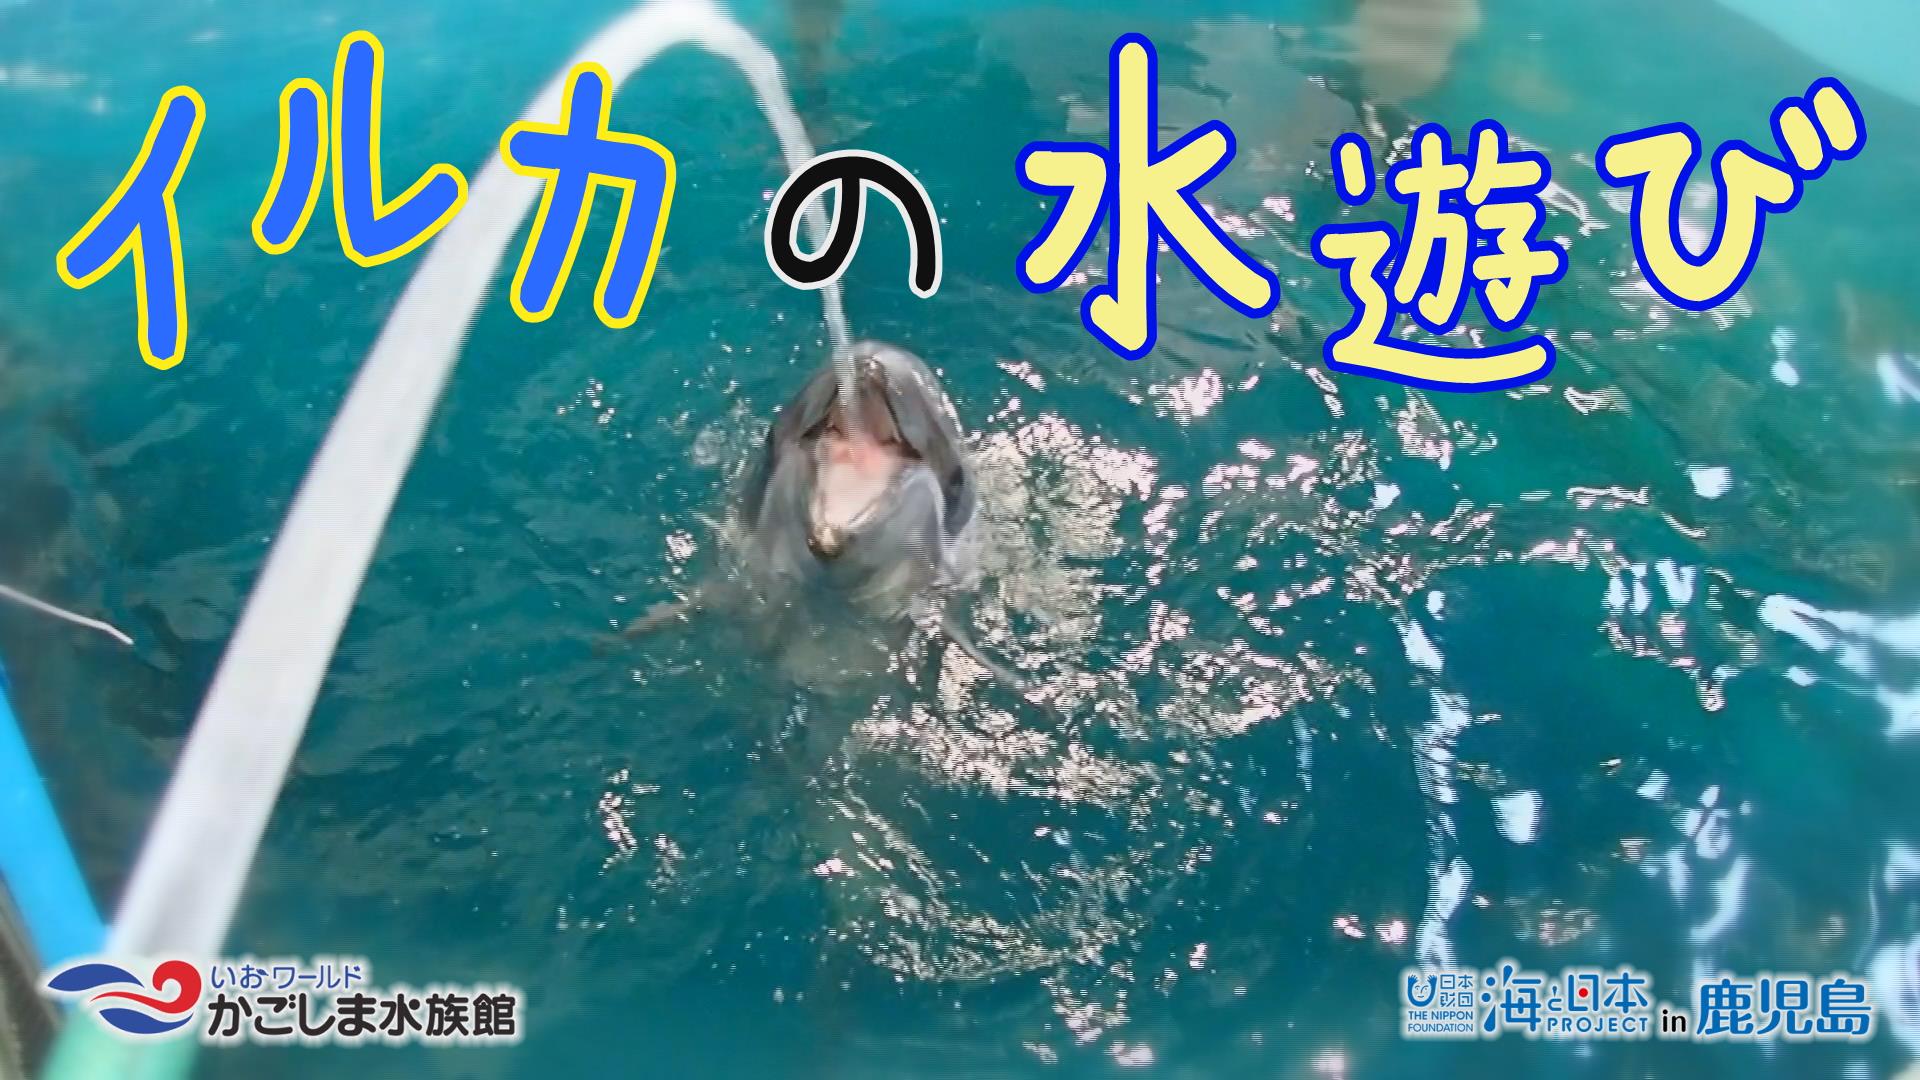 【おうちで水族館】『イルカの水遊び』いおワールド かごしま水族館×海と日本PROJECT in 鹿児島